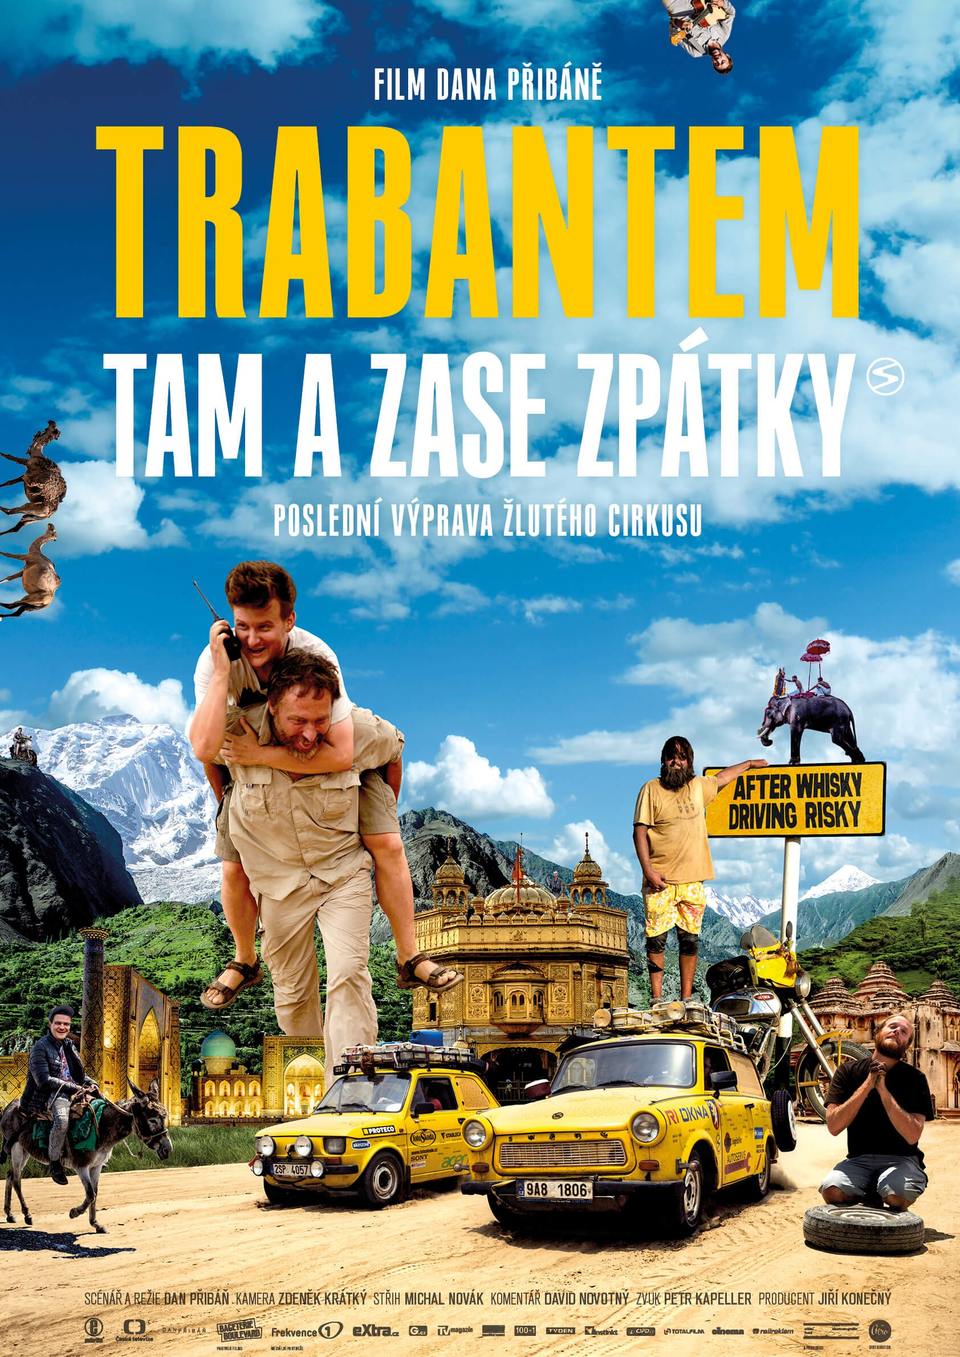 Documentary Trabantem tam a zase zpátky